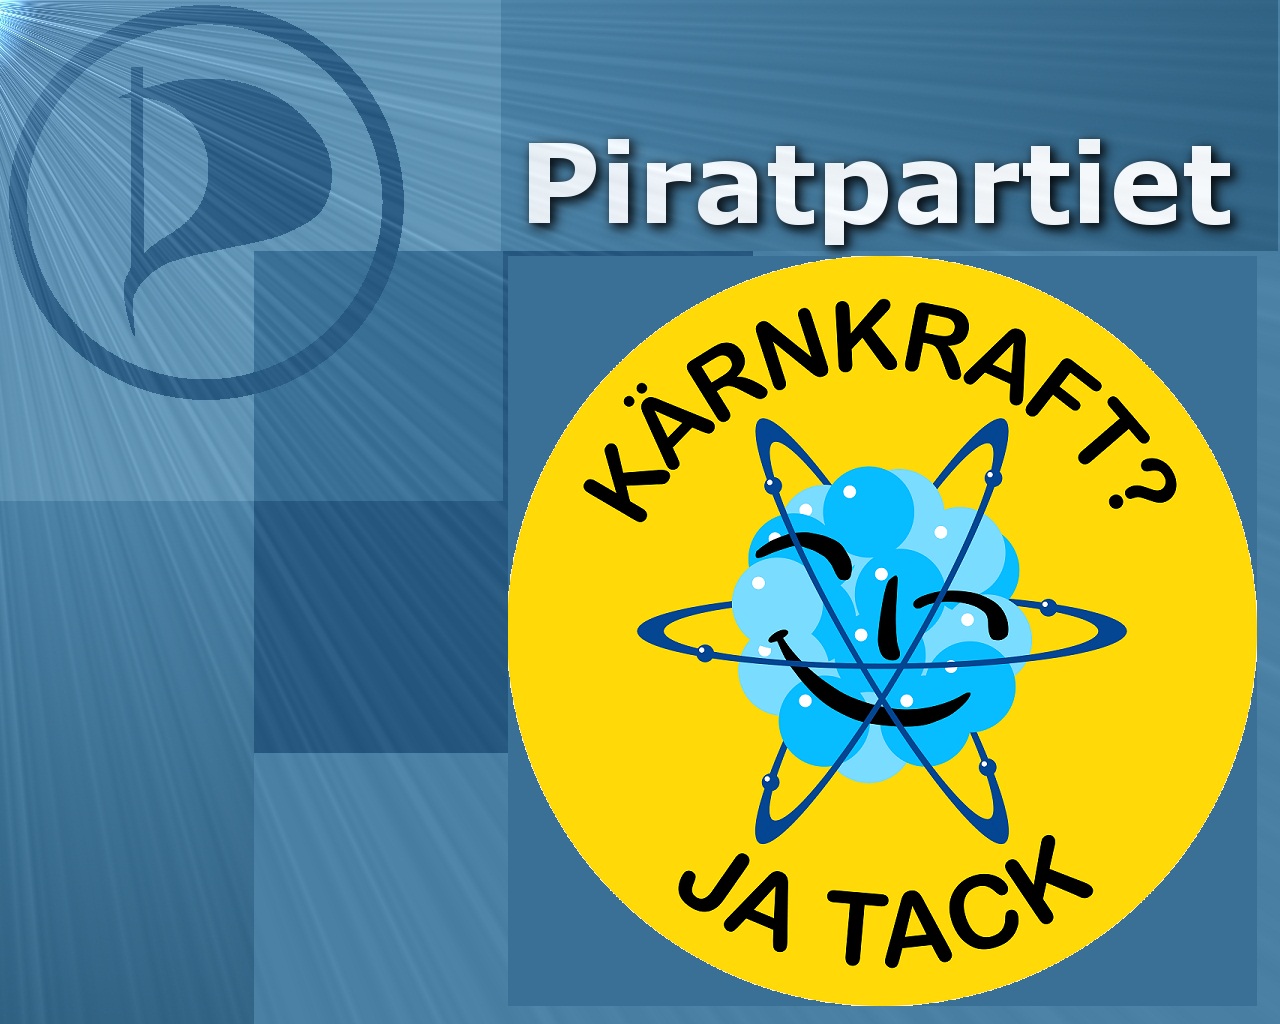 Piratpartiet Skåne tar ställning för mer kärnkraft.